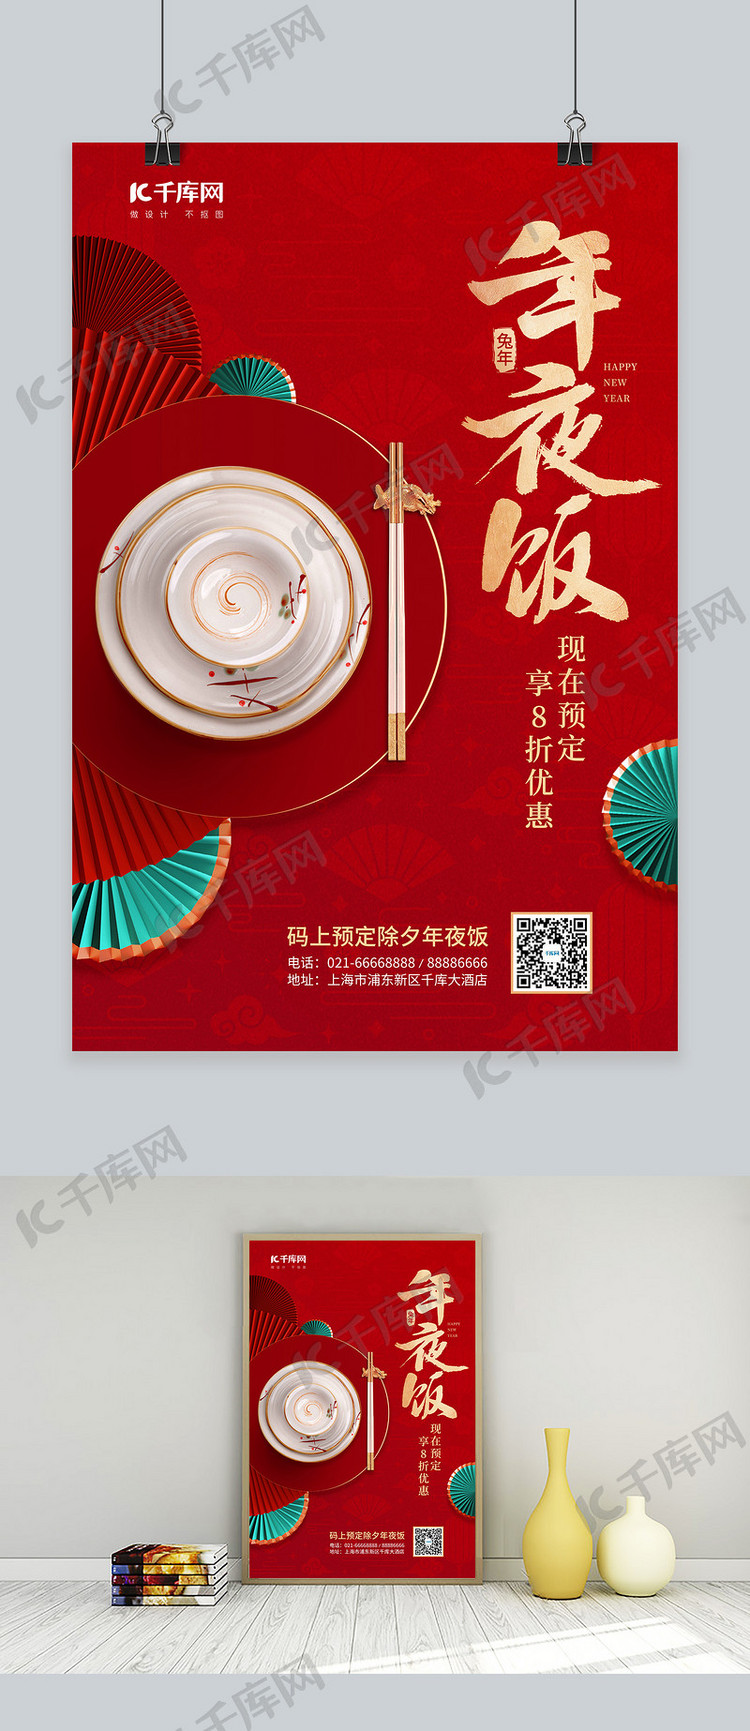 春节除夕年夜饭预定酒店促销红色中国风海报